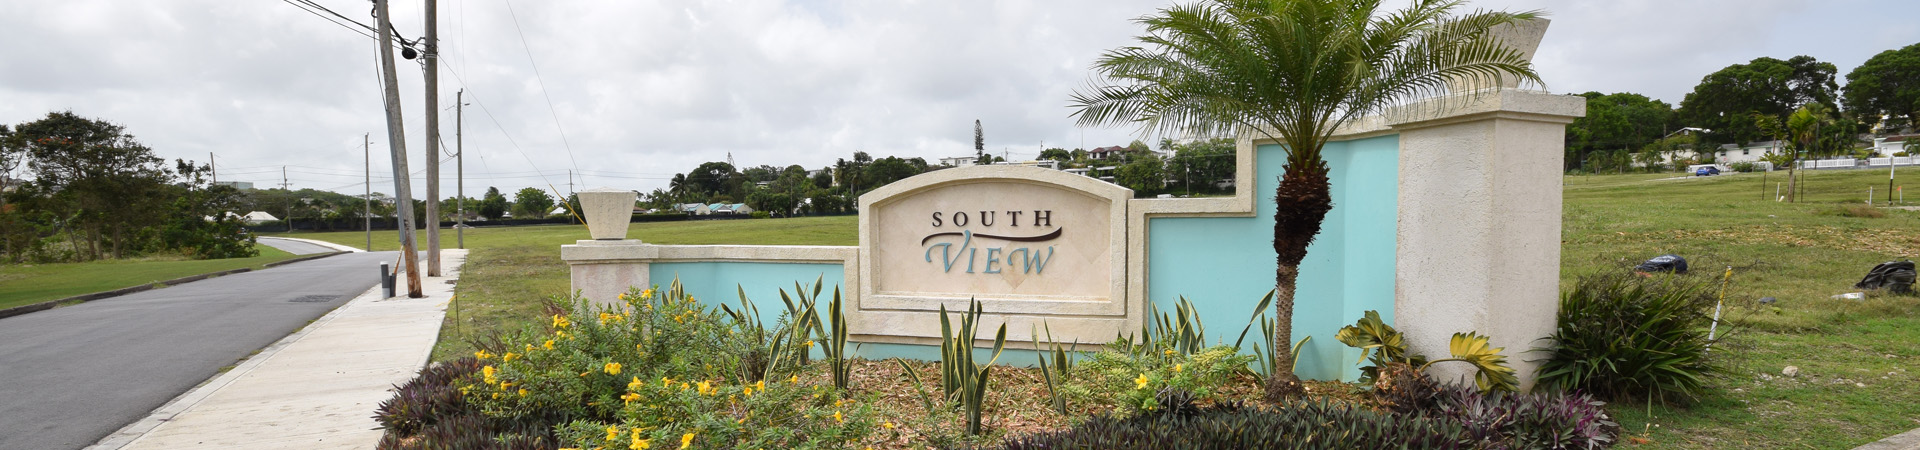 South View Development